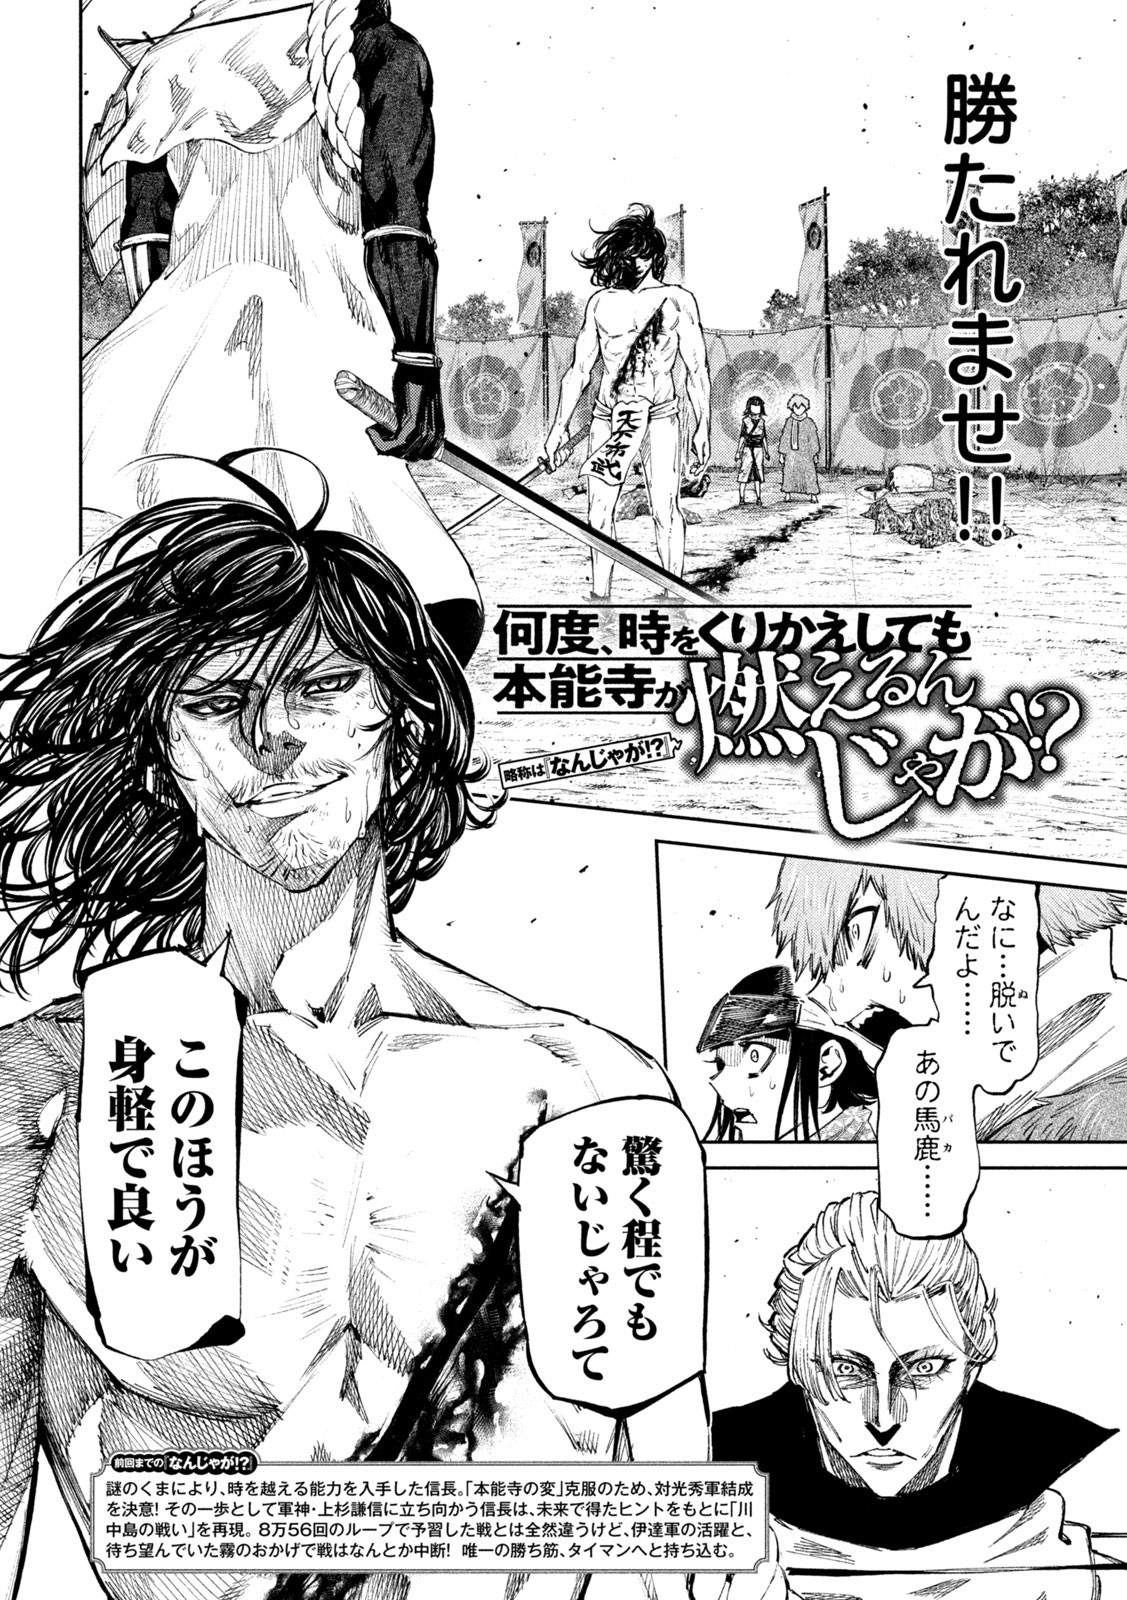 Nando toki o kurikaeshitemo Honnouji ga moerunjaga! - Chapter 111 - Page 2